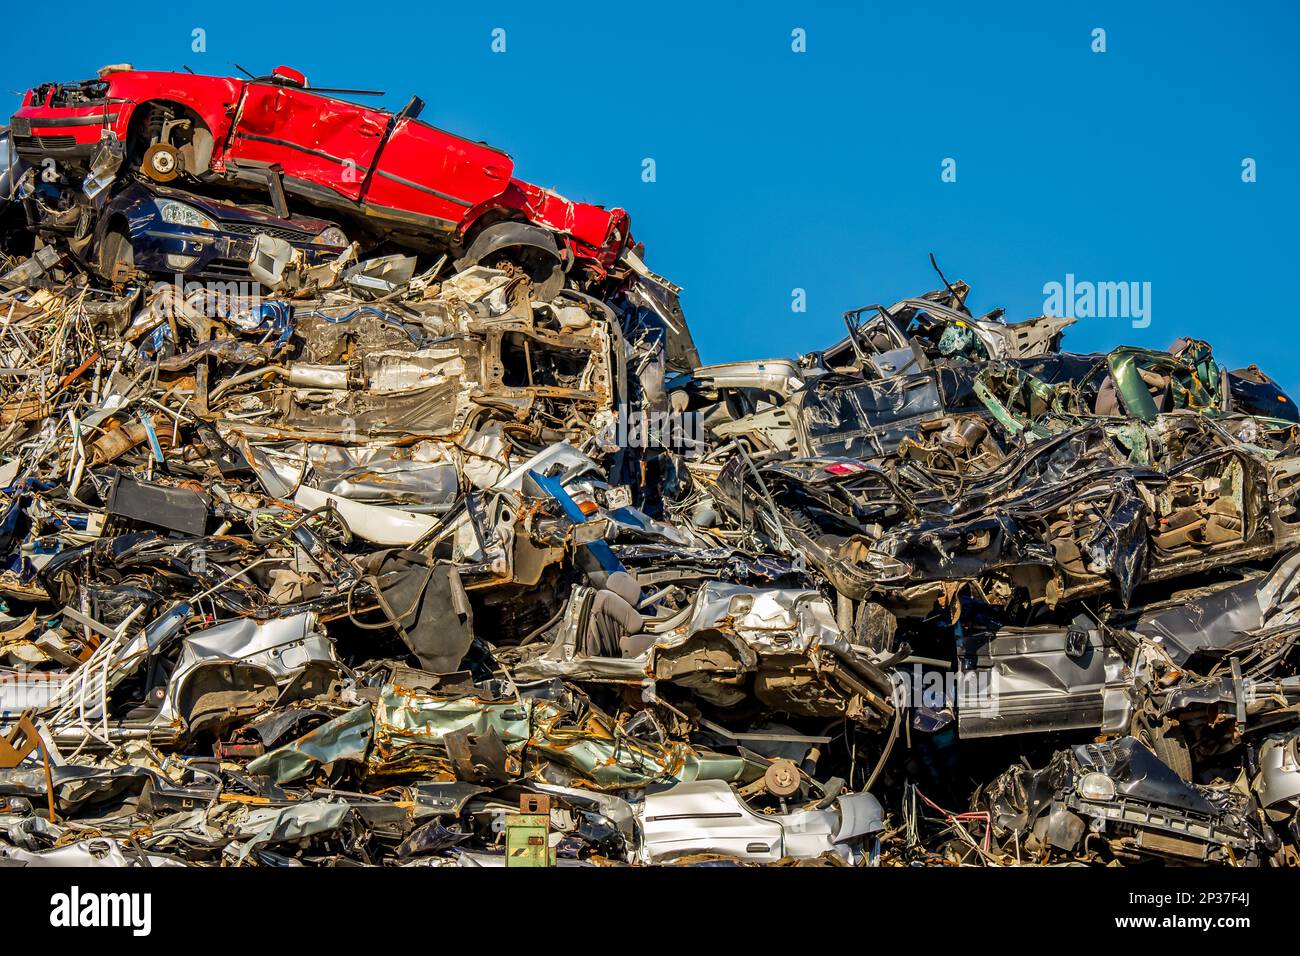 Une voiture rouge se trouve au-dessus d'une pile chaotique de voitures comprimées et écrasées dans un chantier naval, reflétant l'importance du recyclage des voitures et de la gestion des déchets. Banque D'Images